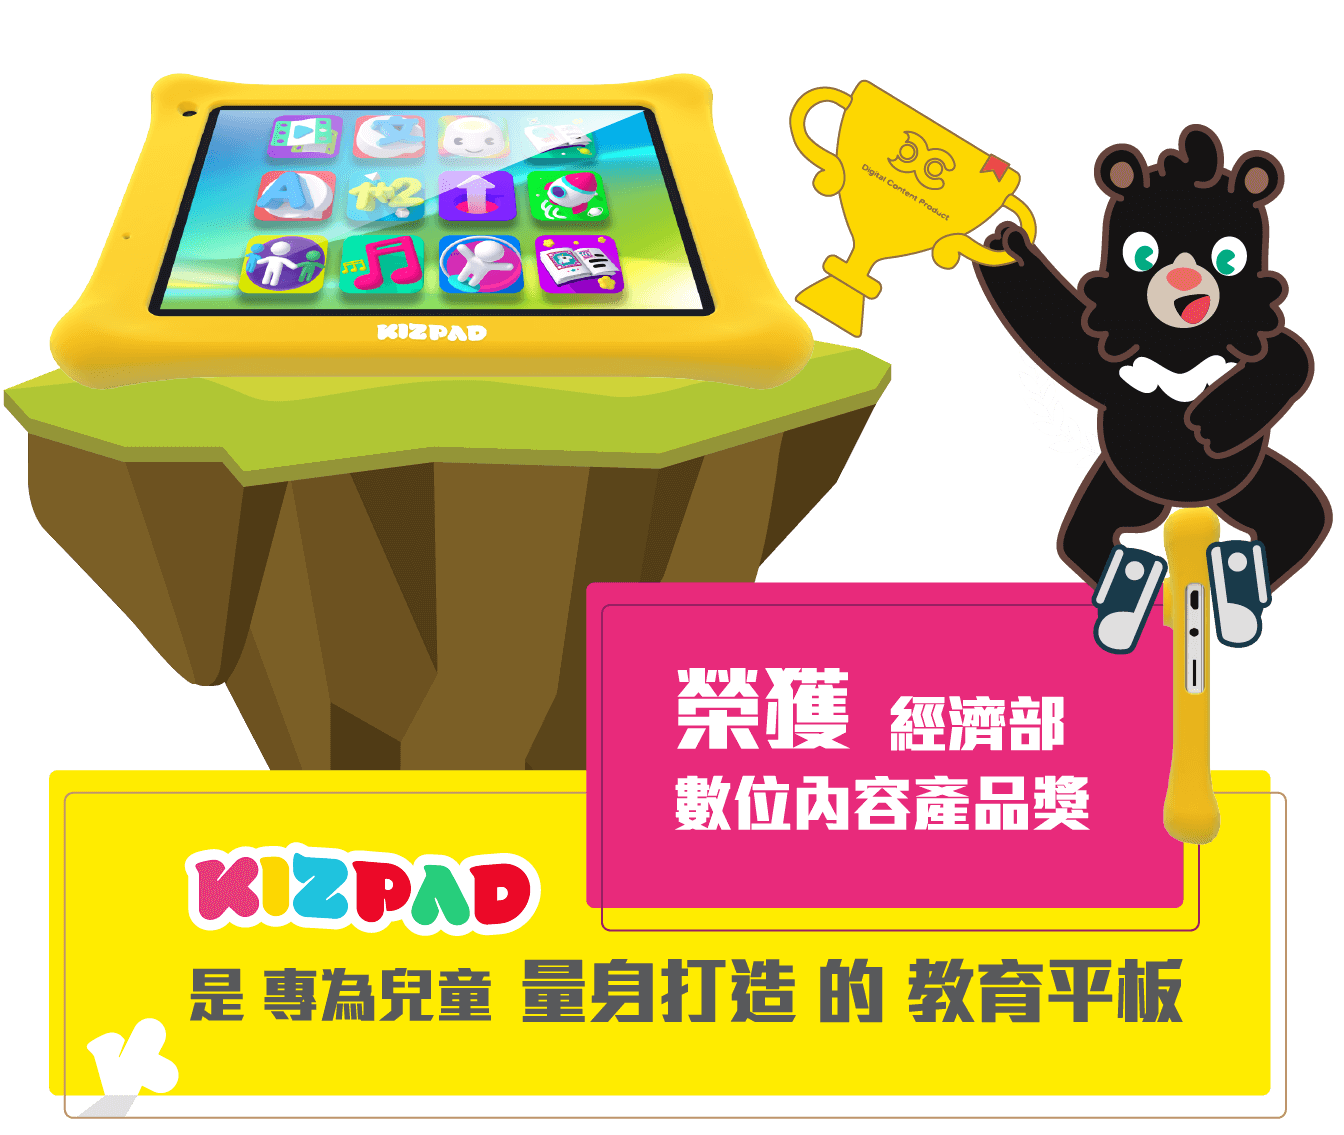 榮獲經濟部數位內容獎 Kizpad 是專為兒童量身打造的教育平板